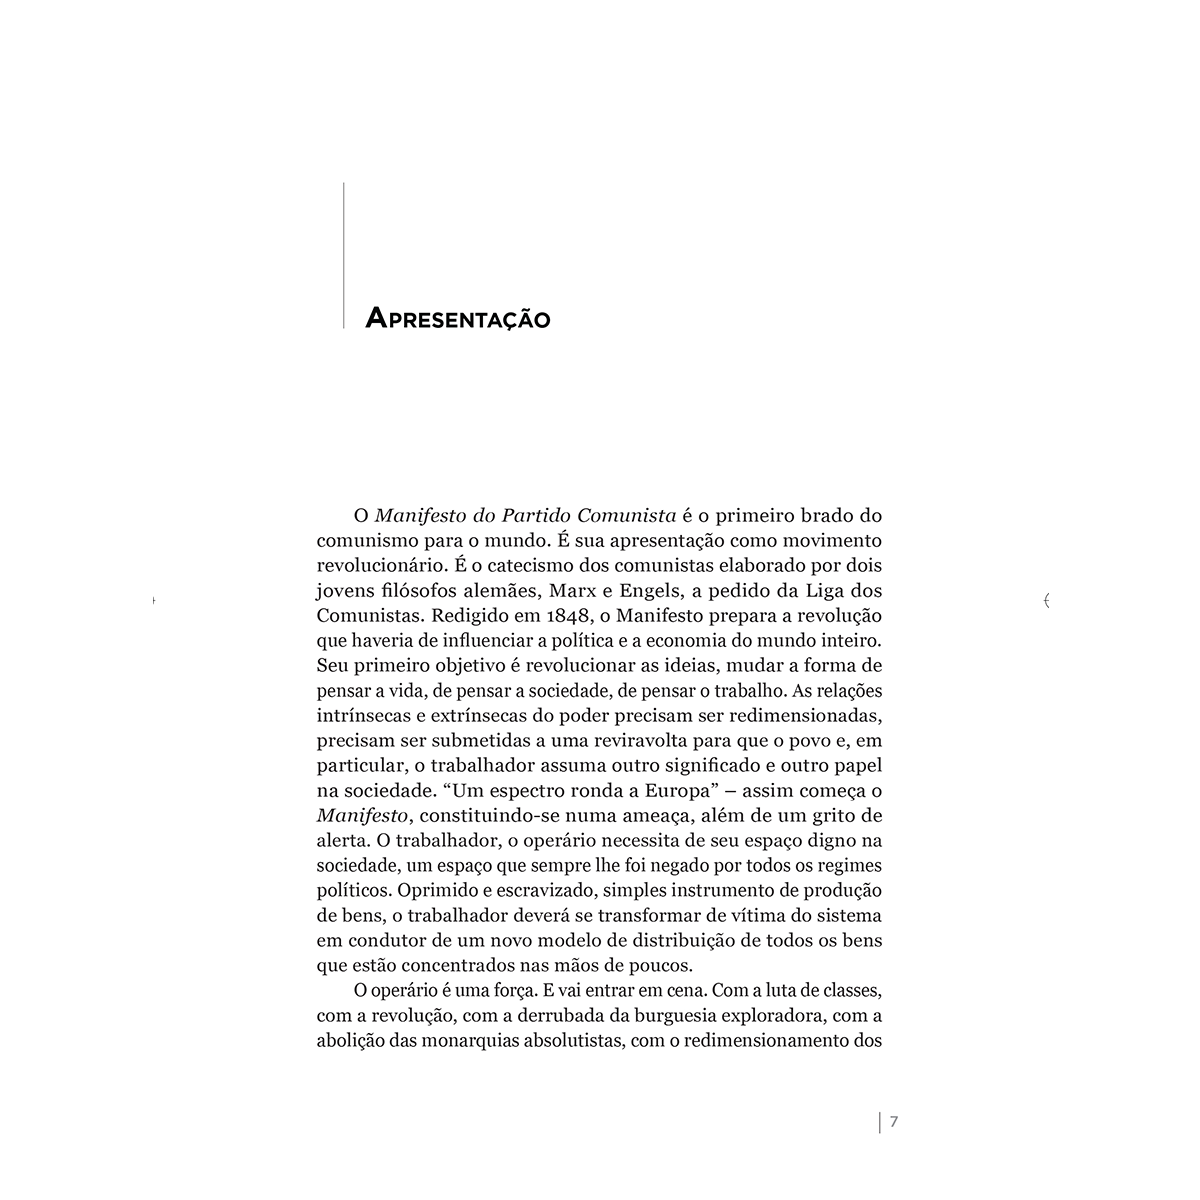 Manifesto Do Partido Comunista Karl Marx And Friedrich Engels P 9788581862811 Manifesto Do 3738